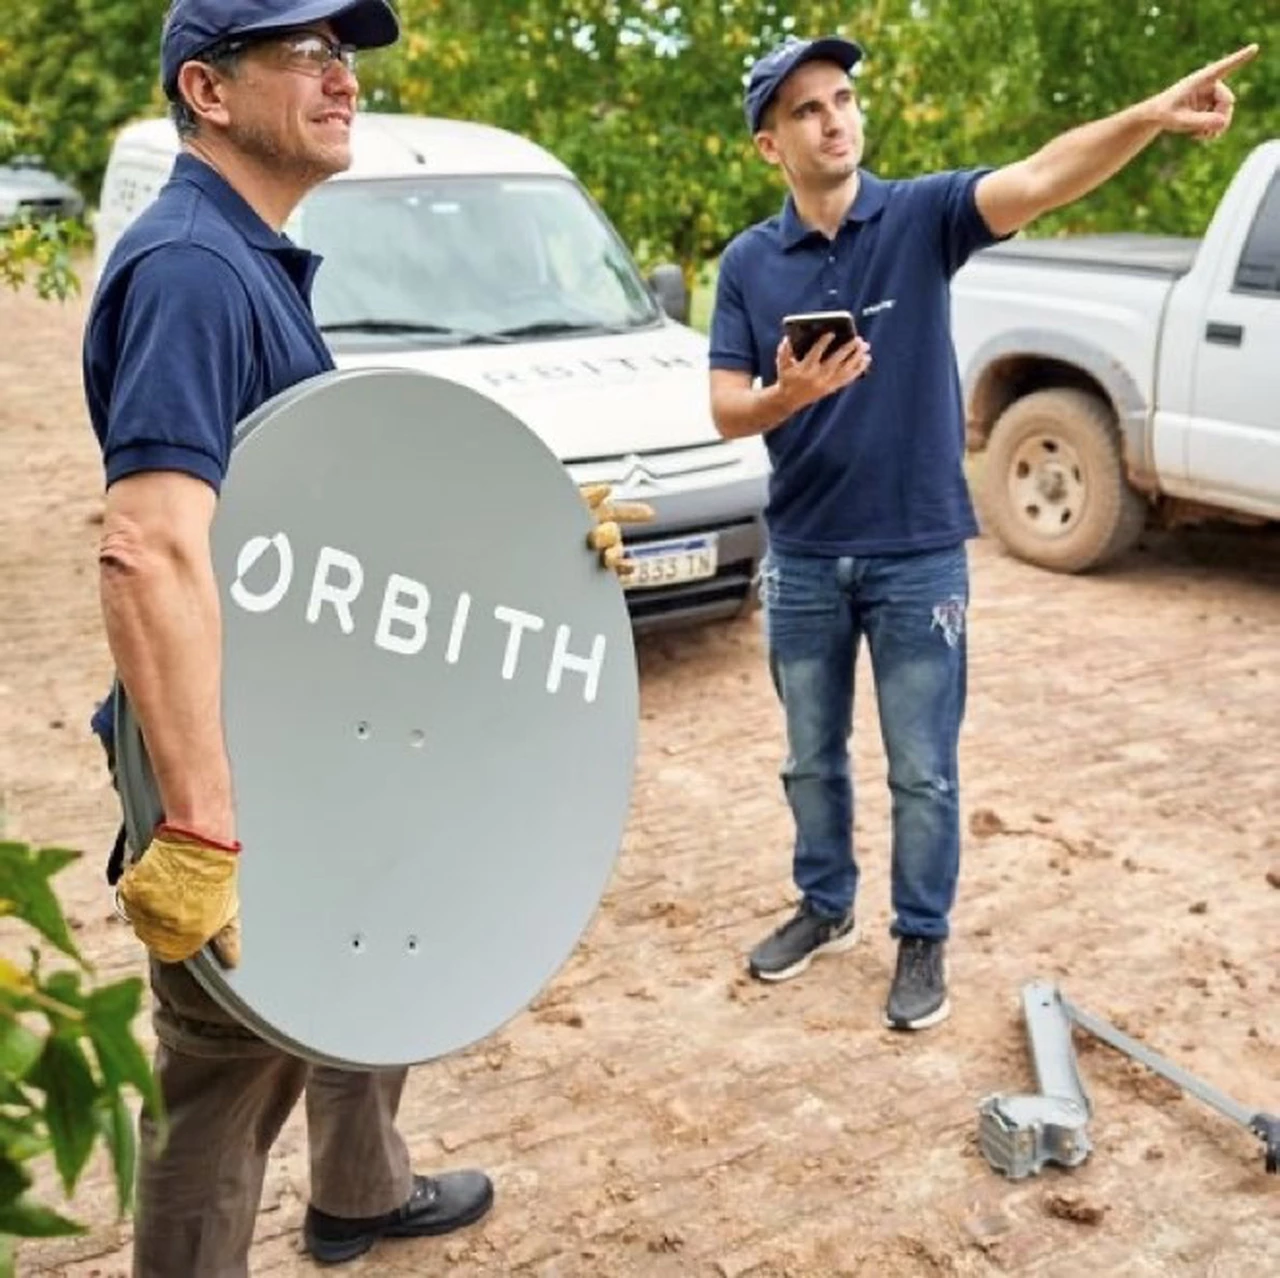 ORBITH pone en órbita su ambicioso proyecto de internet satelital